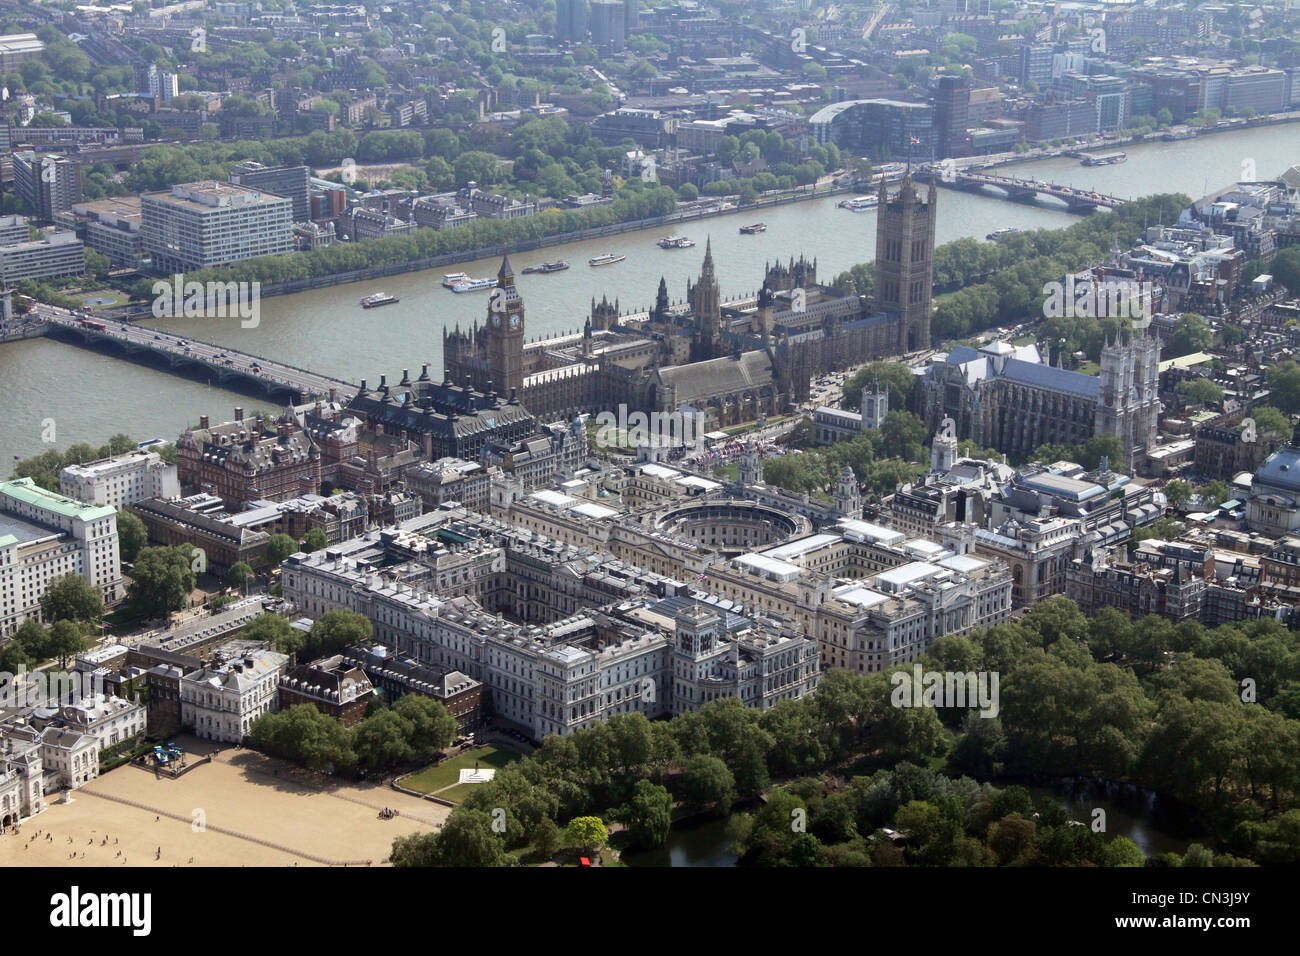 Vue aérienne du 10 Downing Street & Foreign & Commonwealth Office en regardant vers les Maisons du Parlement et la Tamise en arrière-plan, Londres Banque D'Images